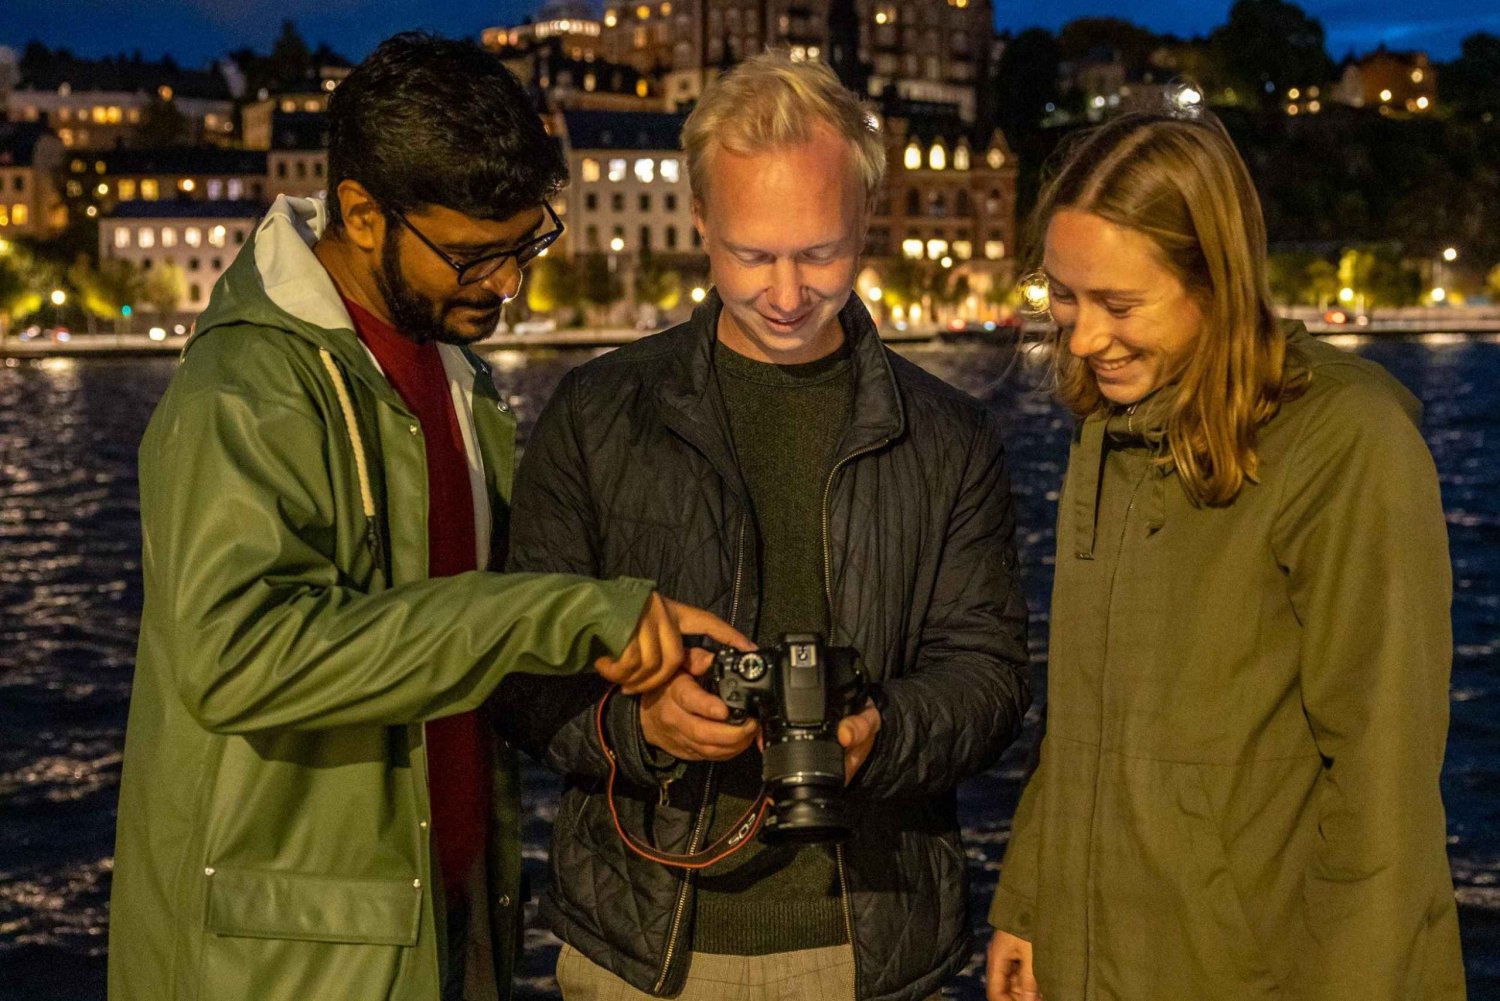 Promenade photographique 'Stockholm la nuit' - une expérience magique